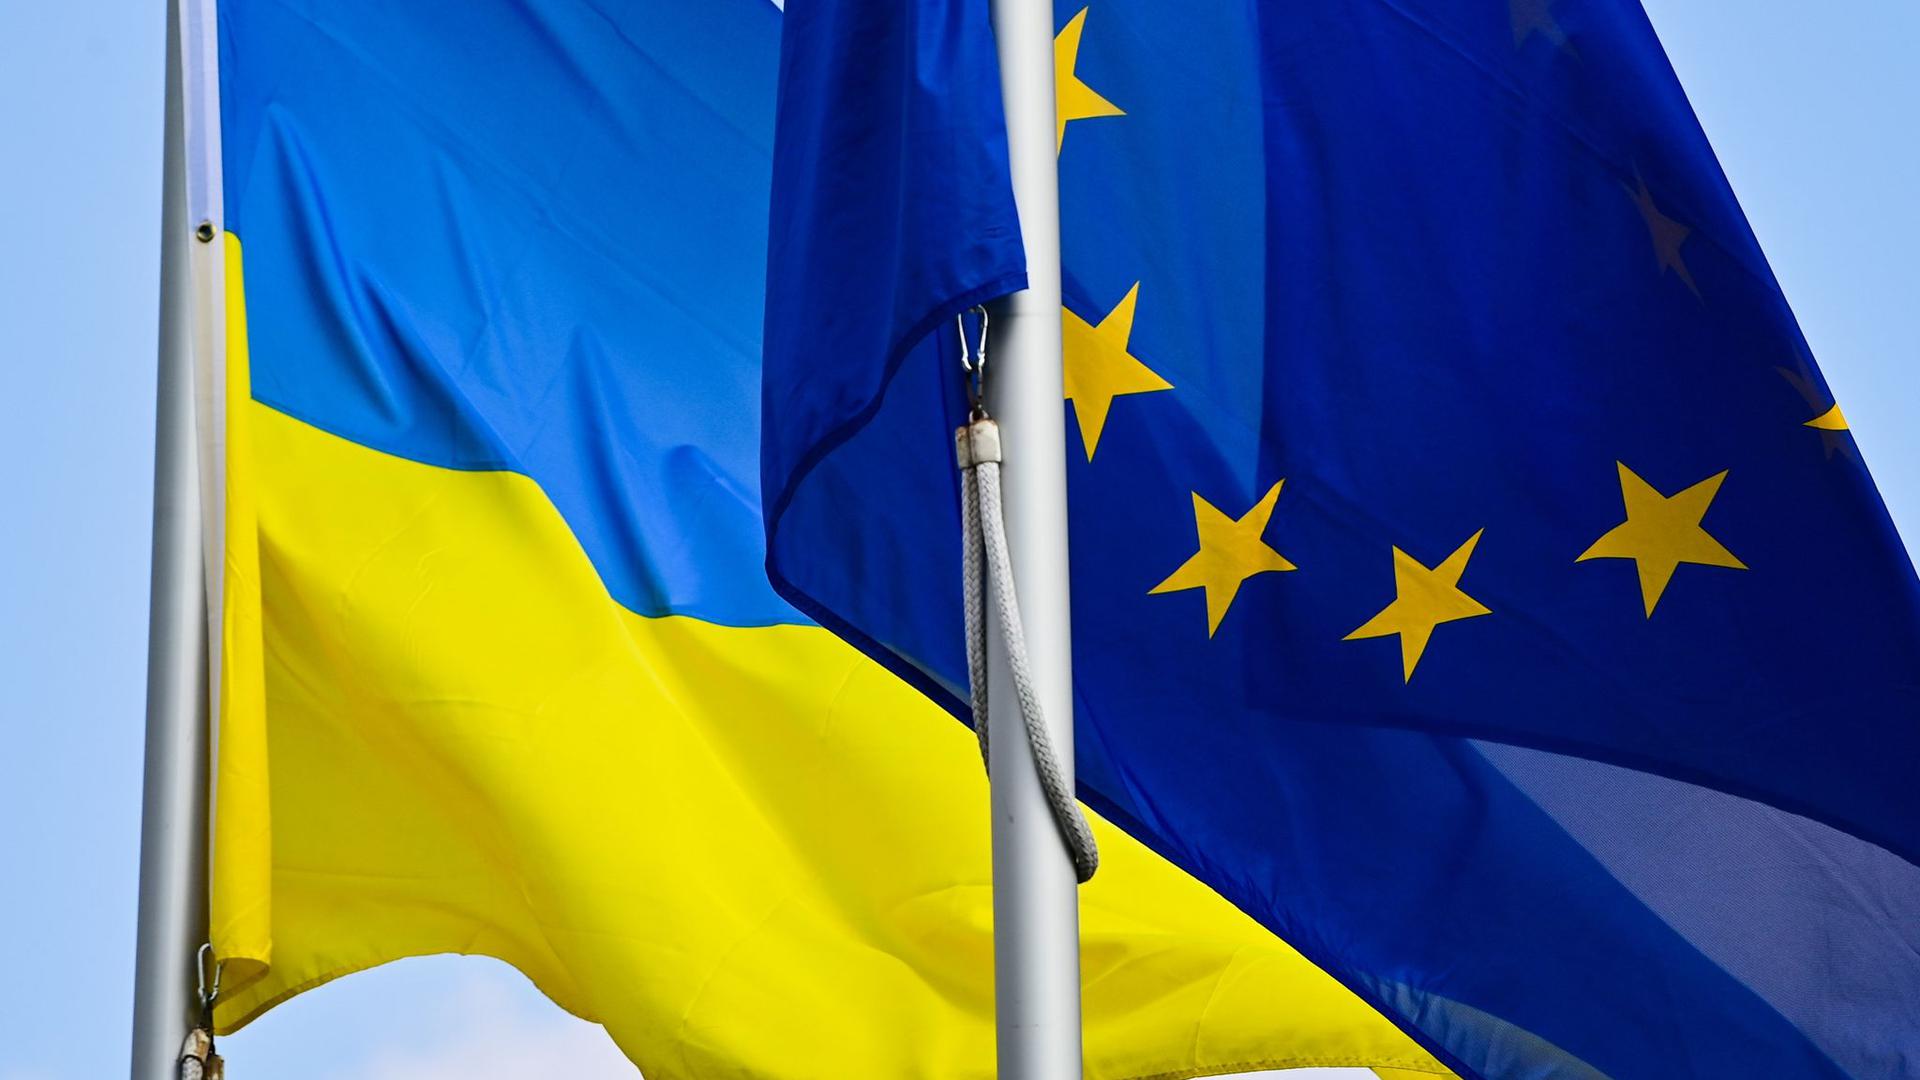 Die Fahnen der Ukraine und der EU.